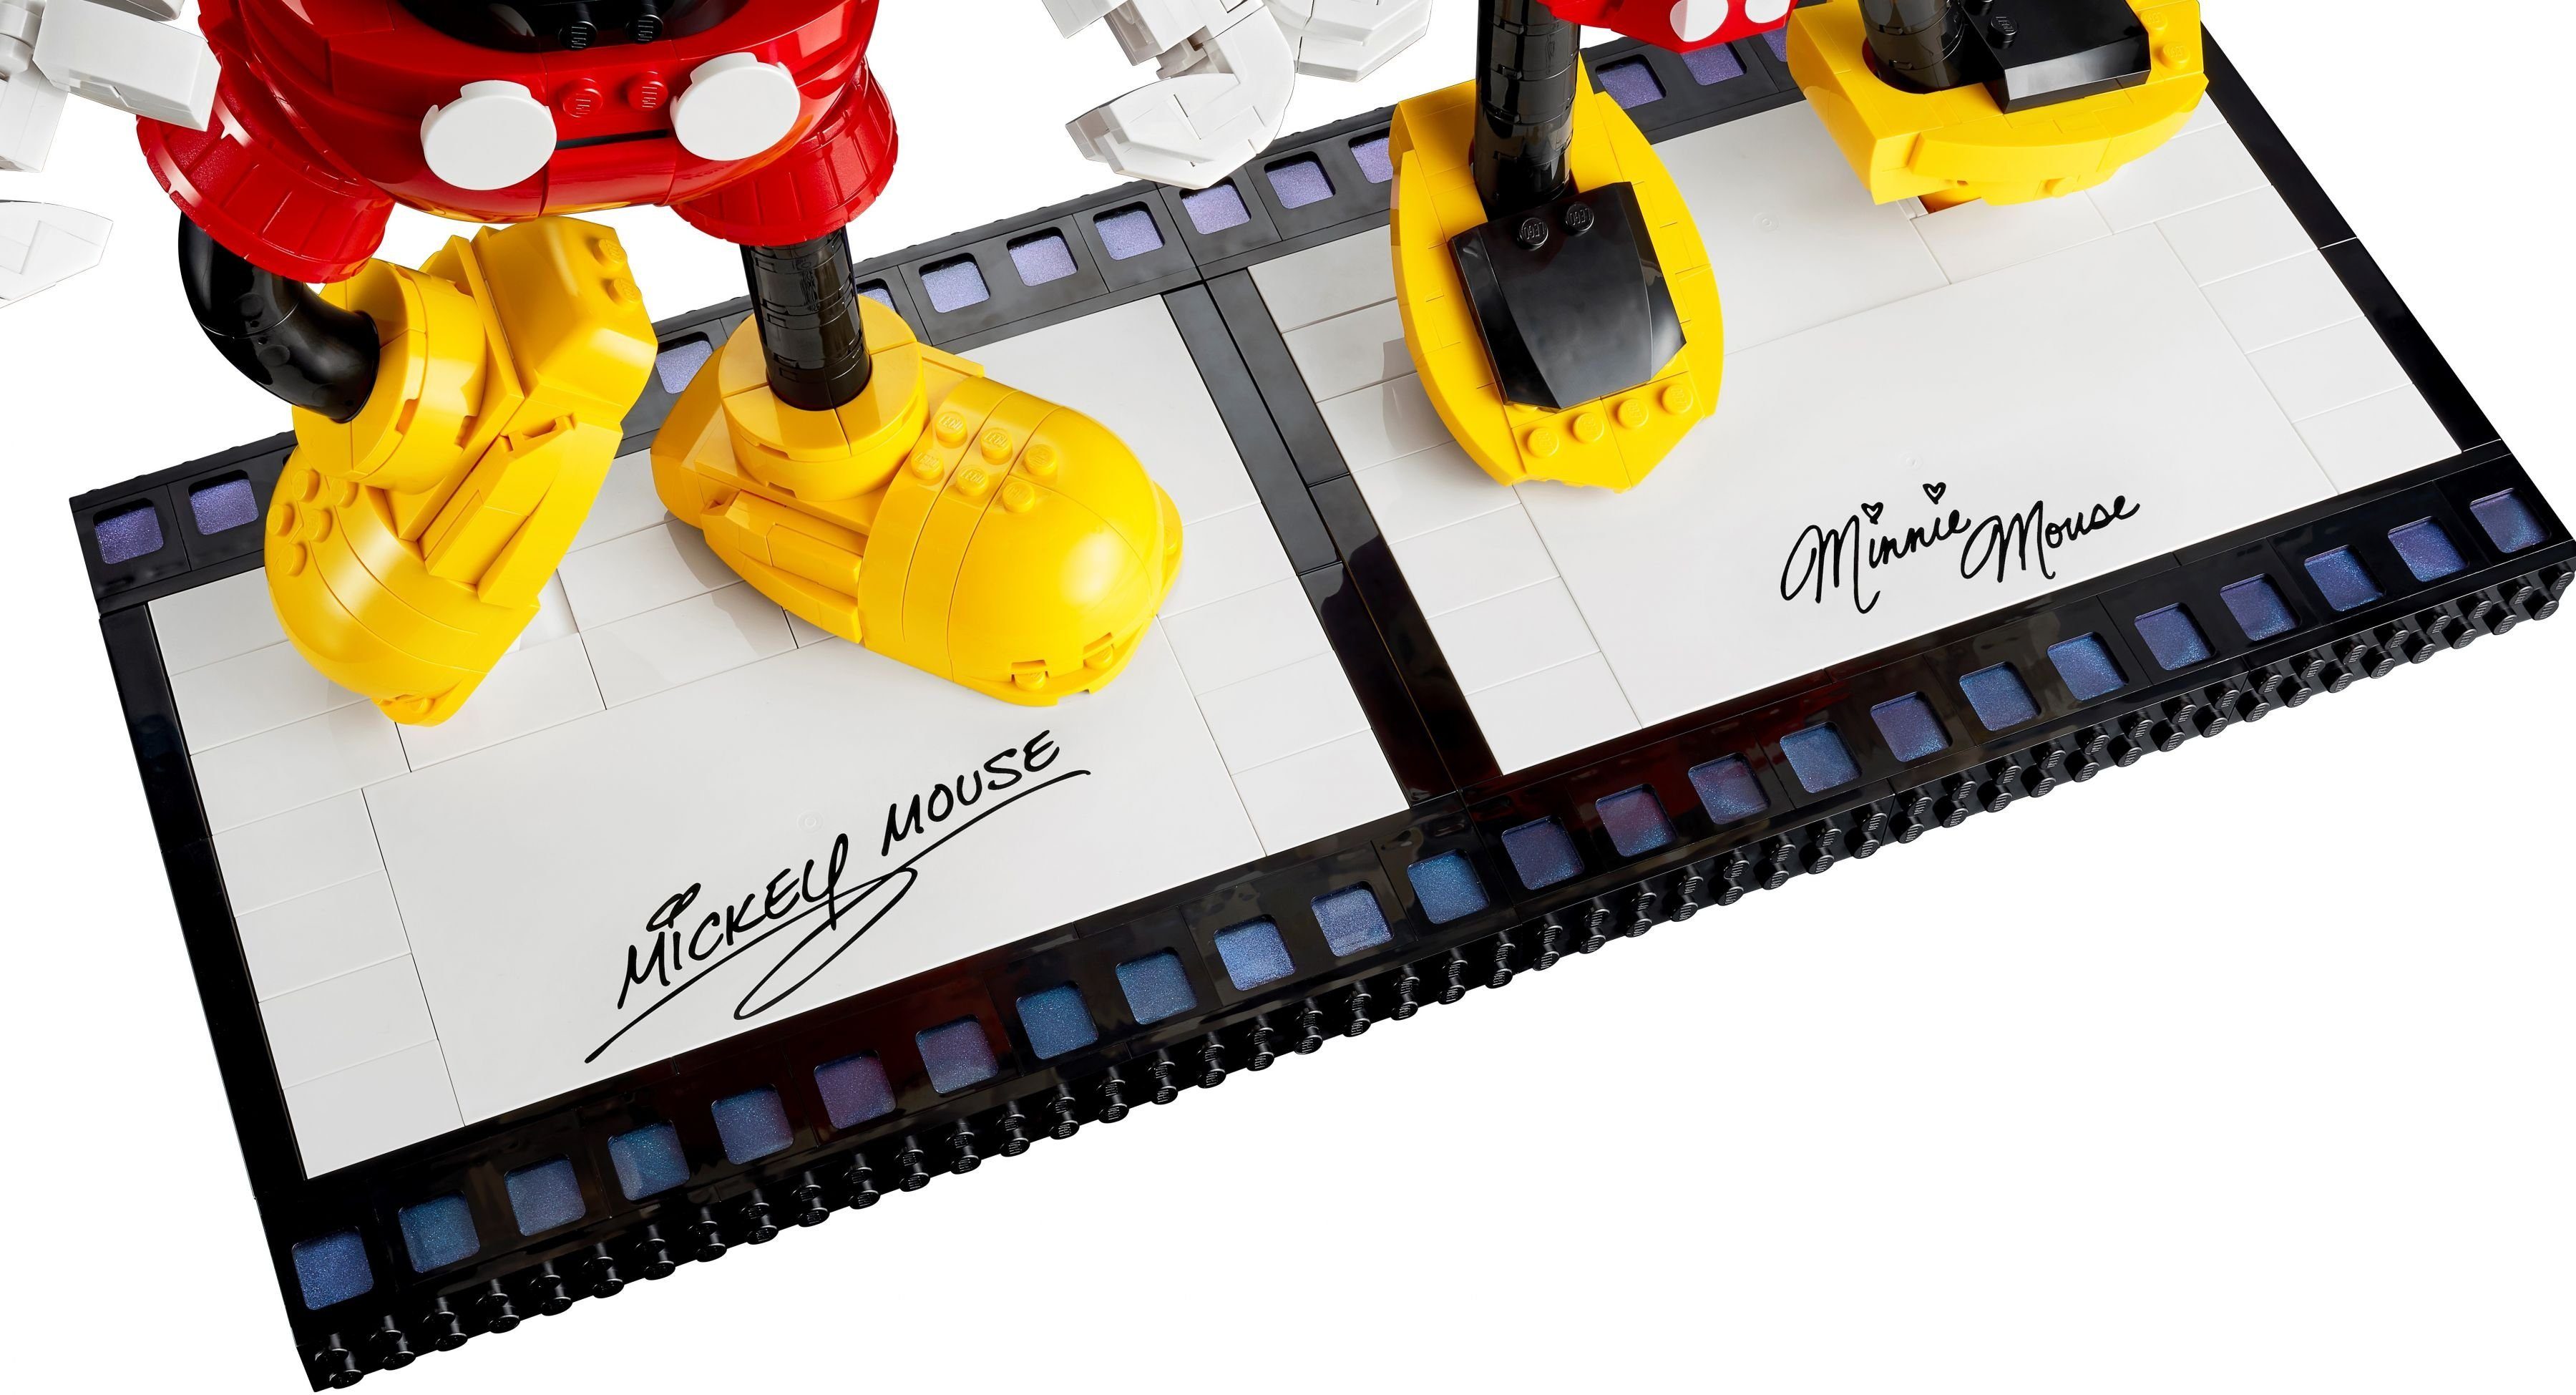 Micky LEGO® Konstruktionsspielsteine LEGO® und Maus, Maus Disney™ 1739 Minnie St) (Set,